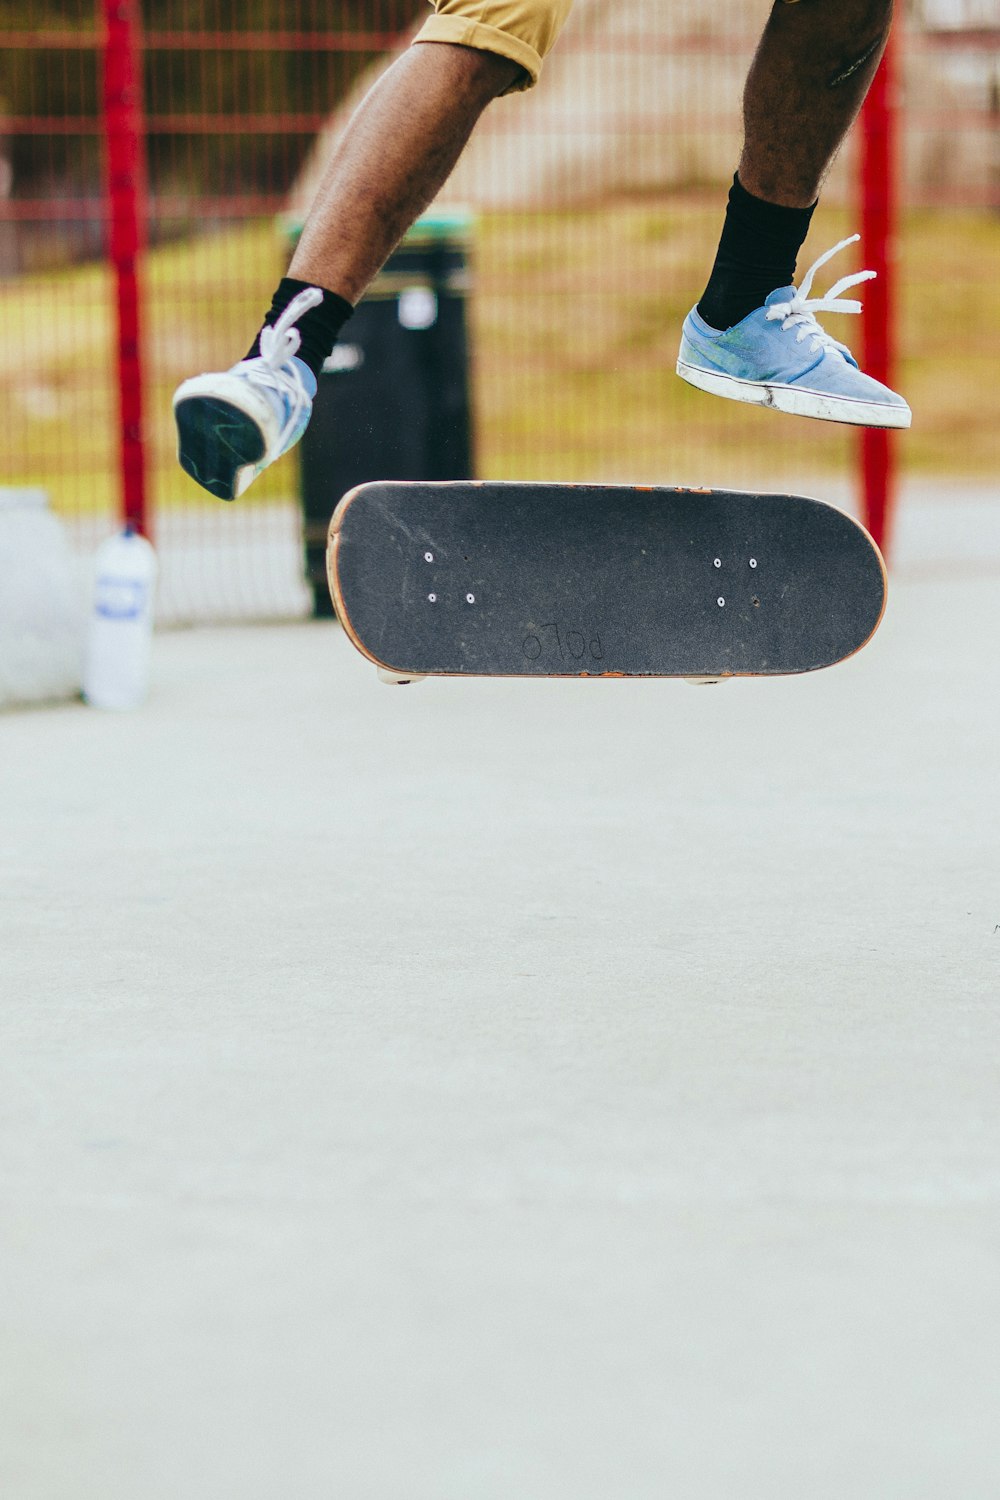 homme jouant au skateboard tout en effectuant des figures flip